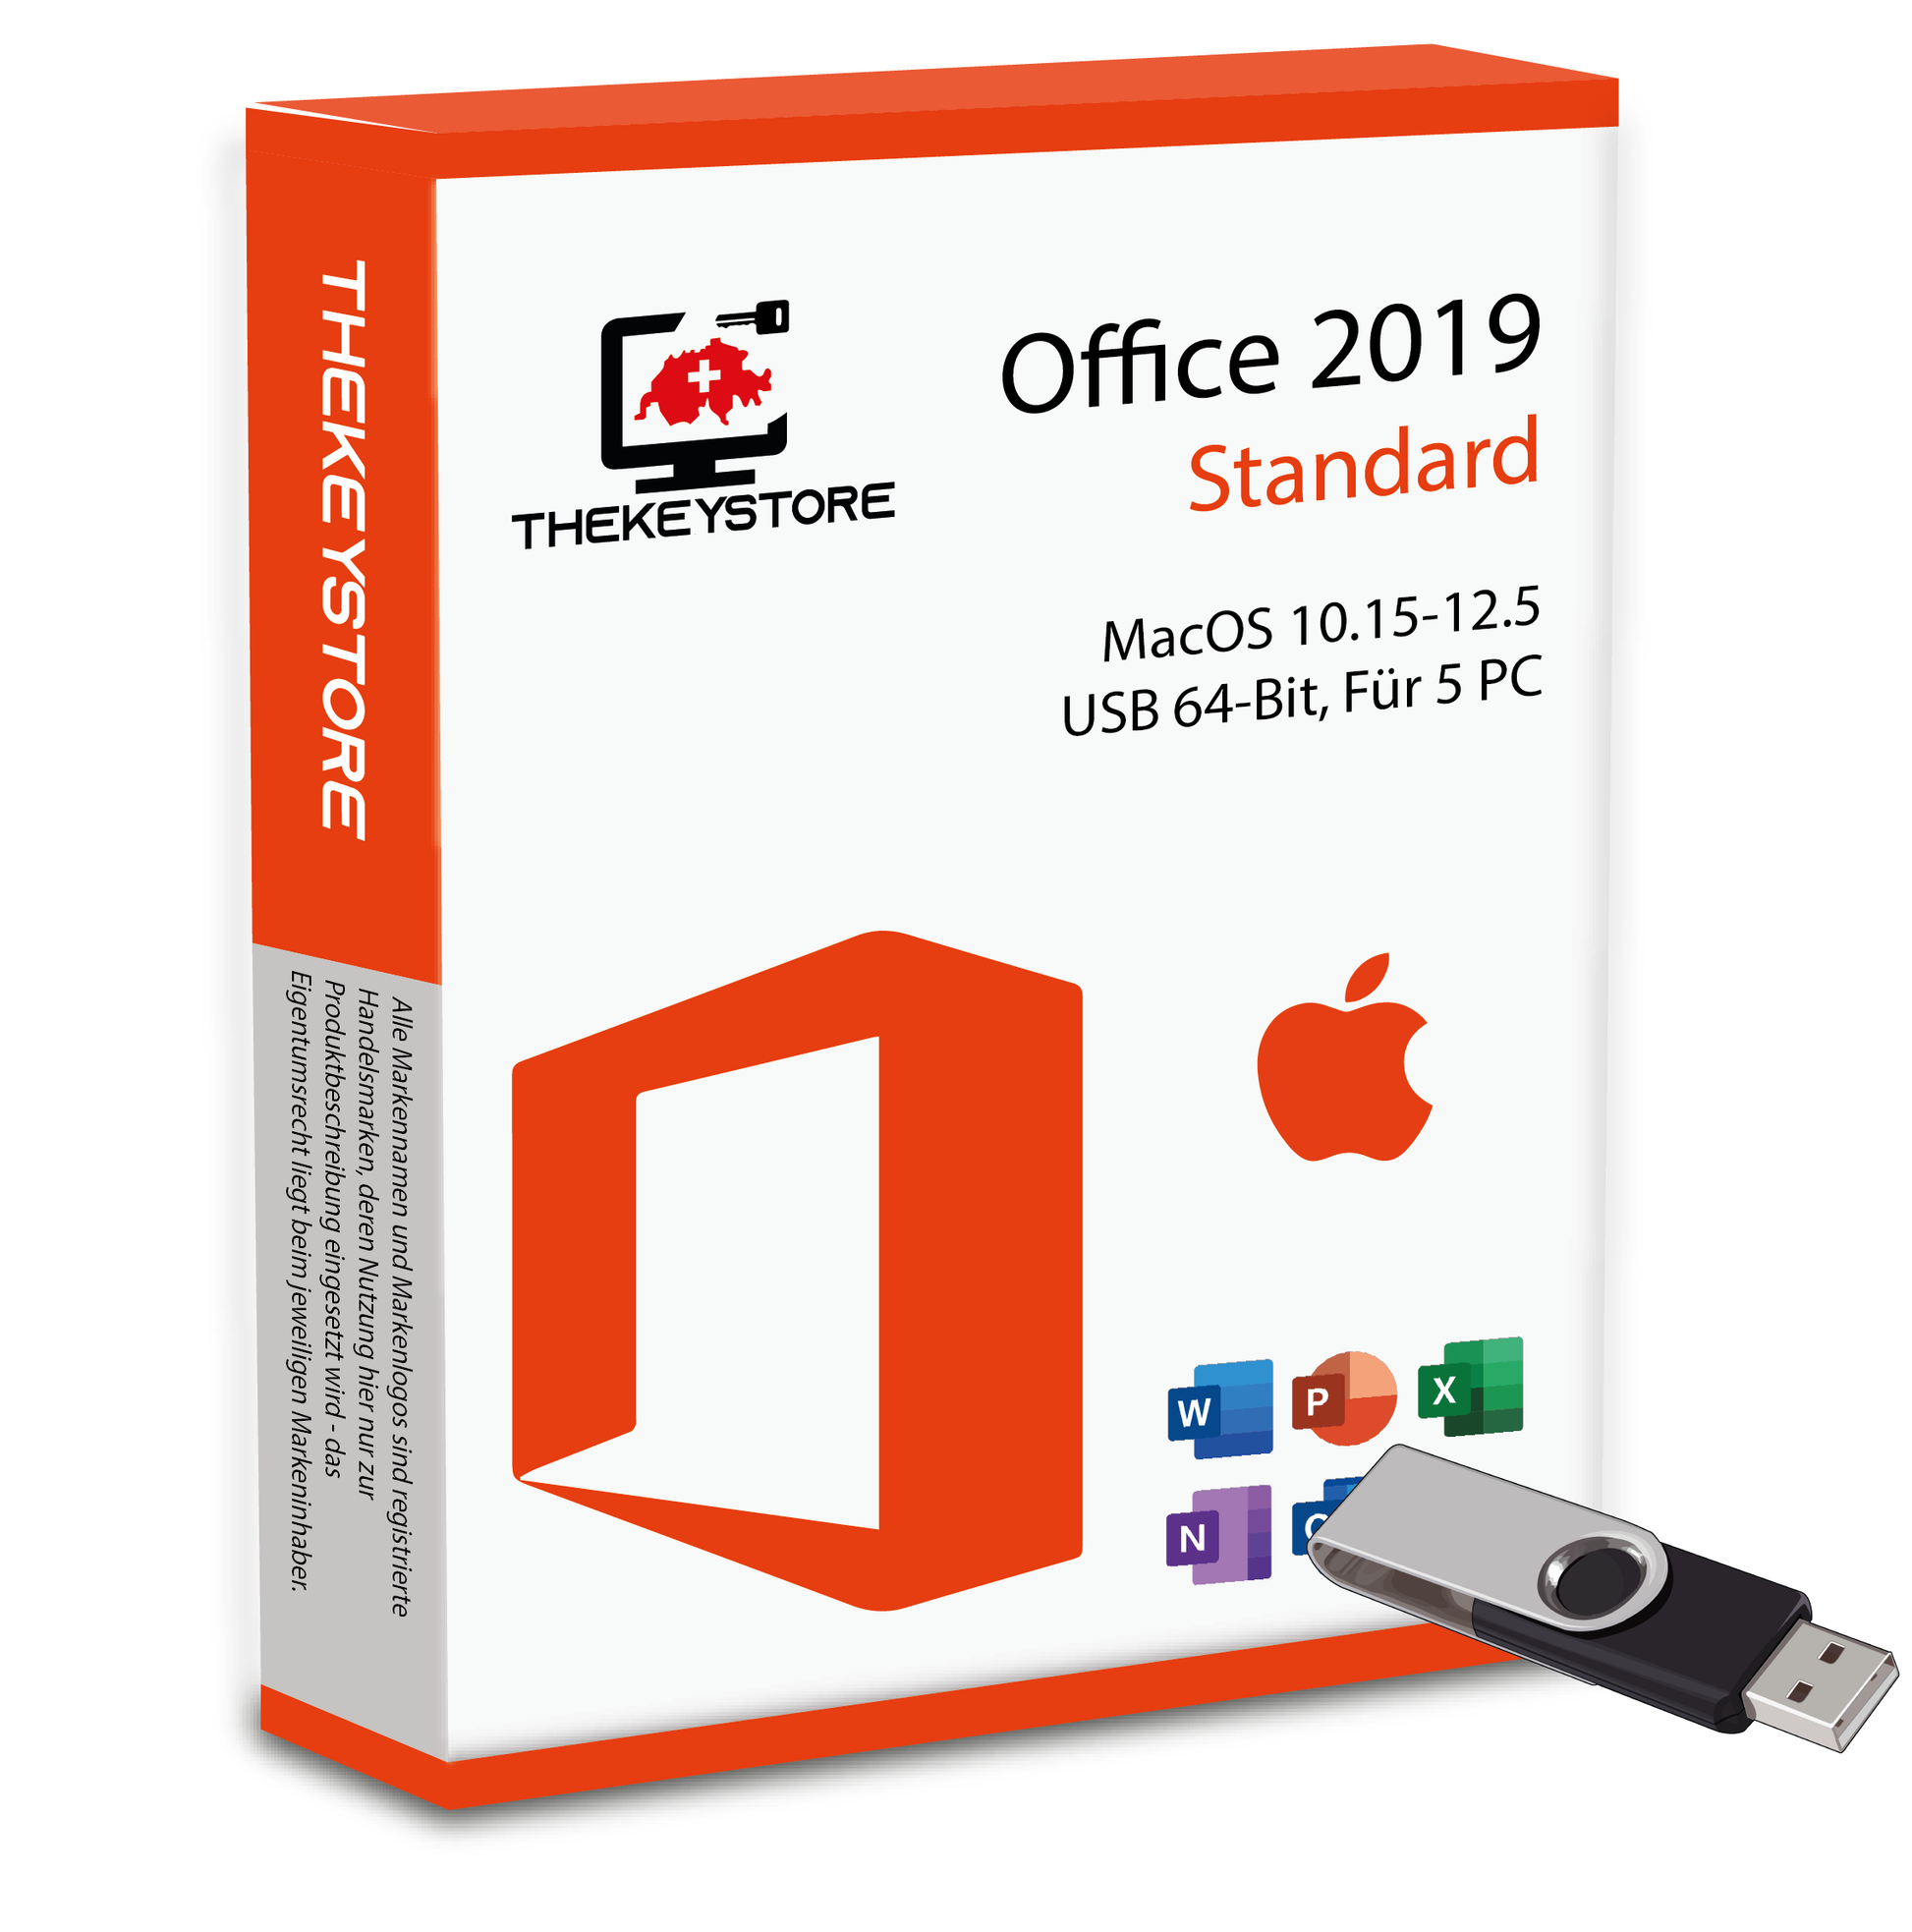 Microsoft Office 2019 Standard MacOS 10.15-12.5 - Für 5 PC - TheKeyStore Schweiz